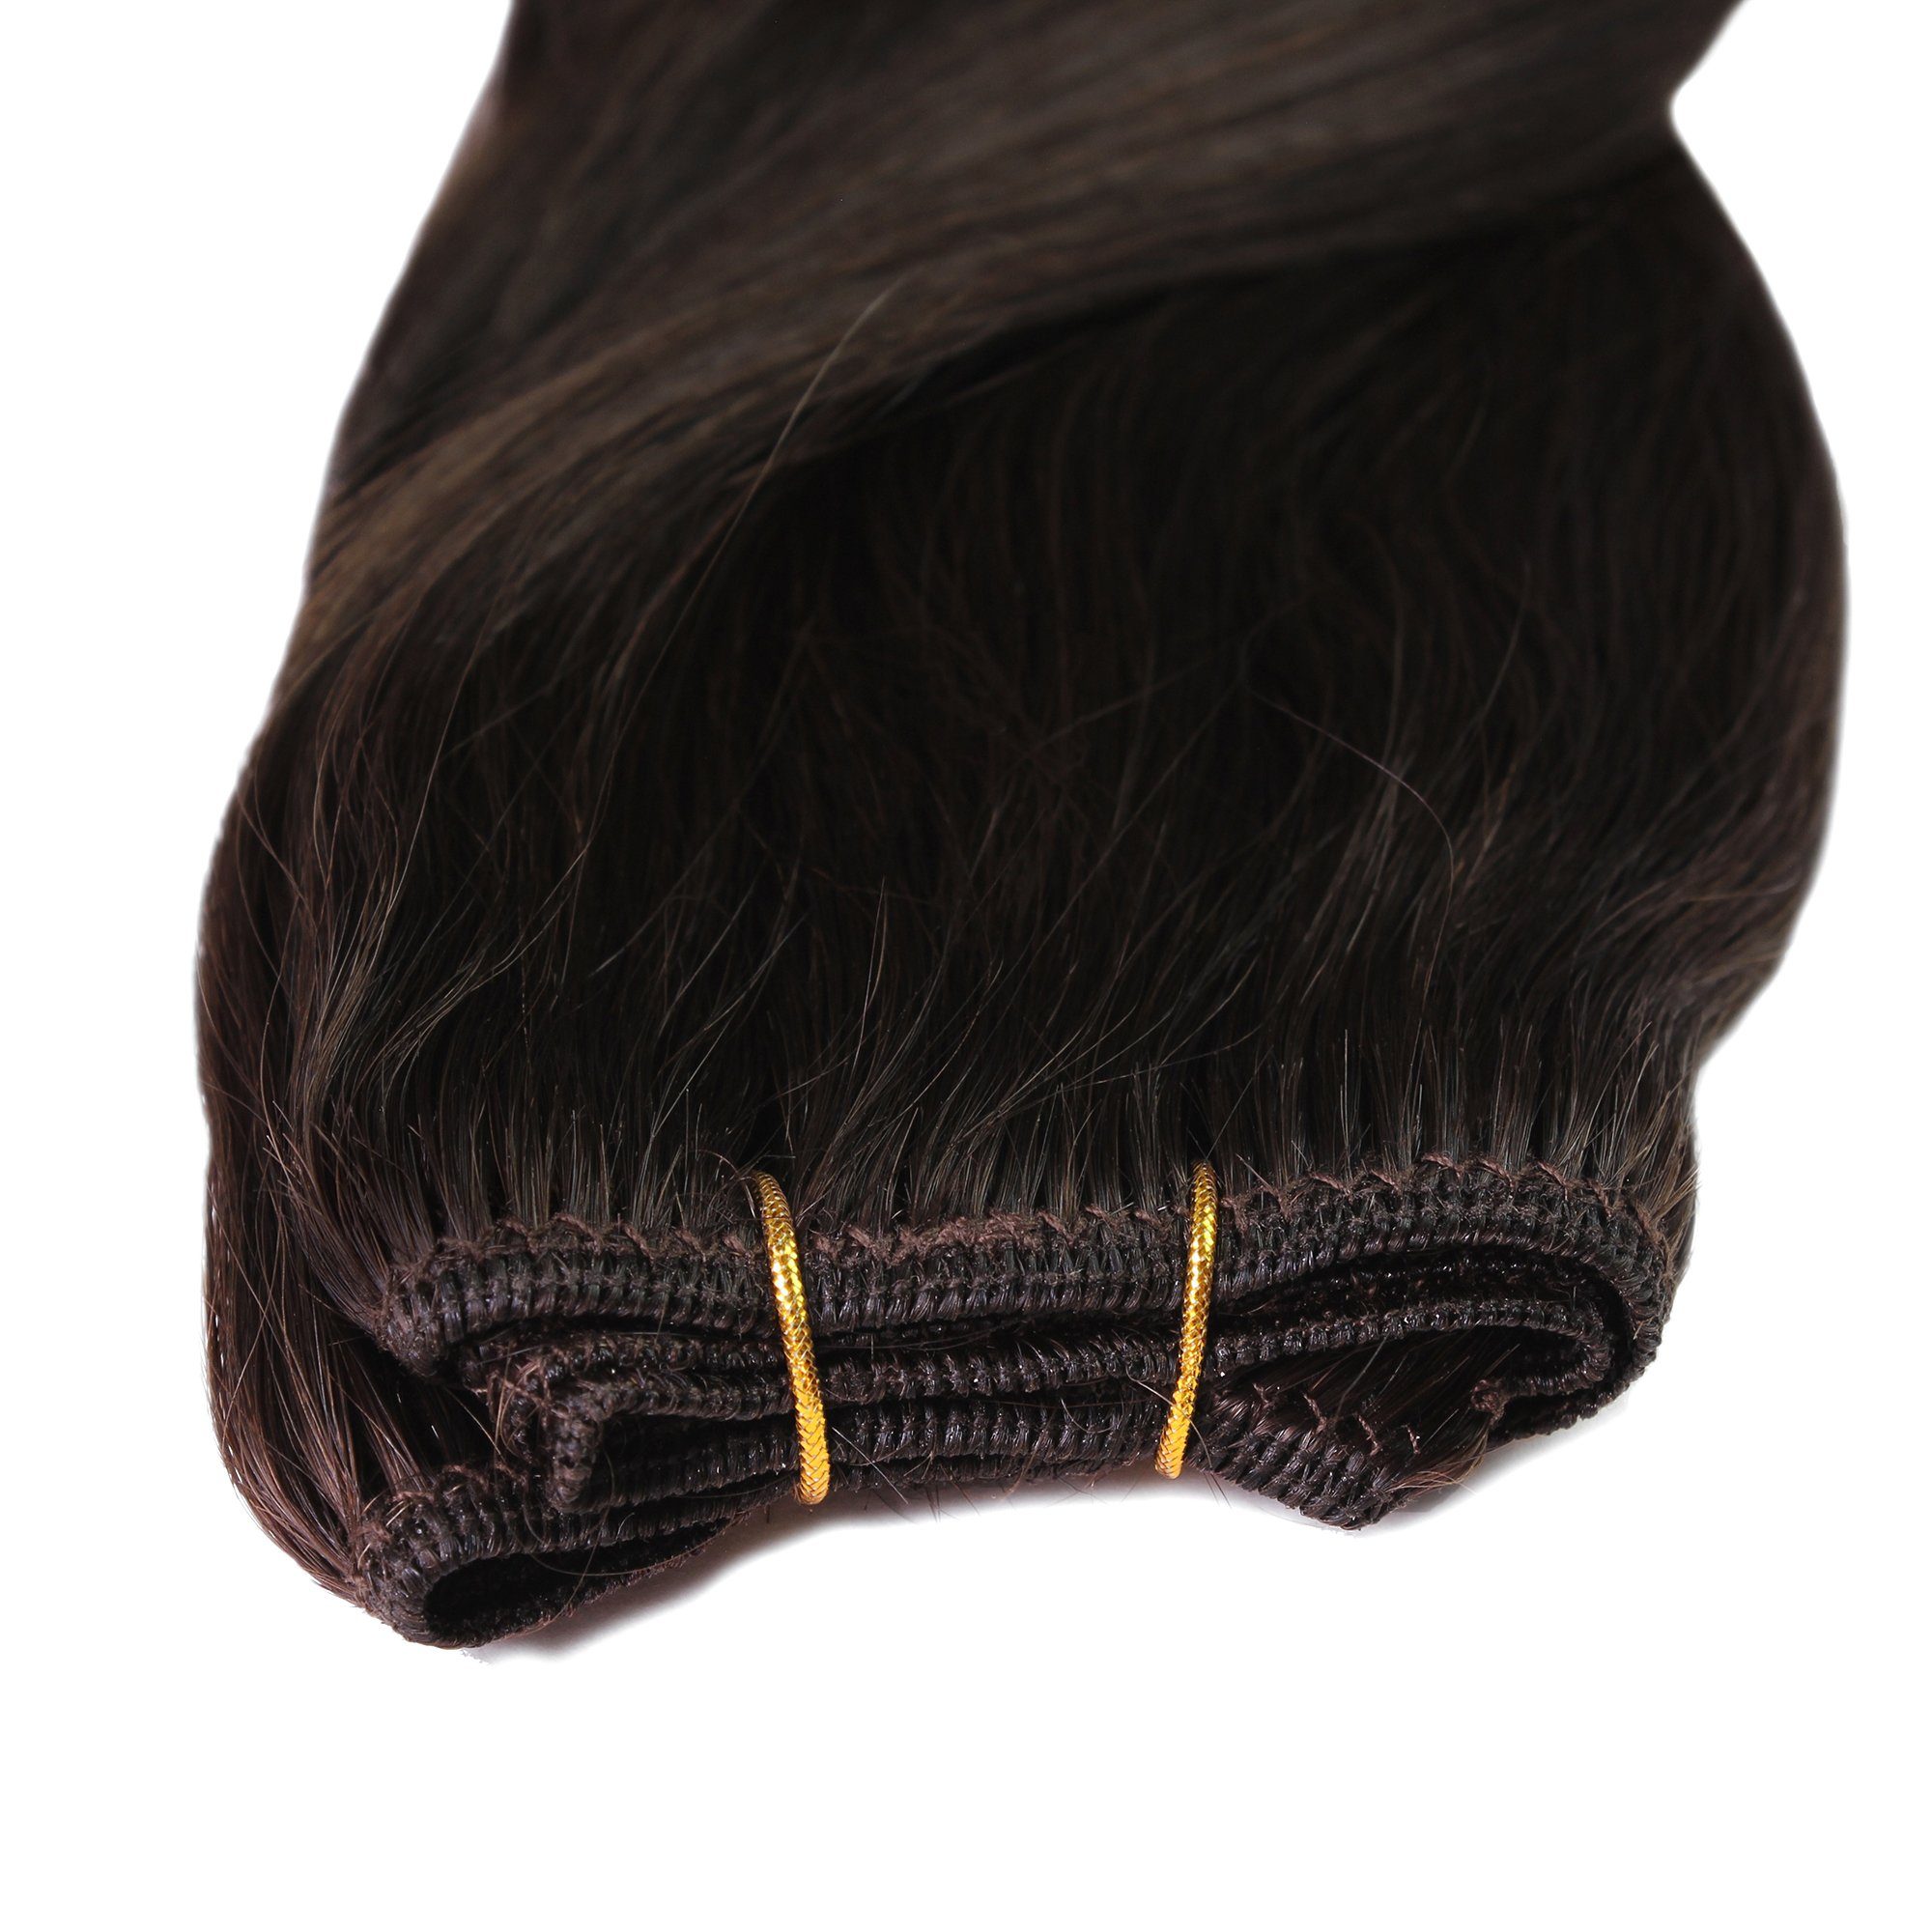 Hellbraun 40cm hair2heart Premium #5/0 Echthaartresse Echthaar-Extension